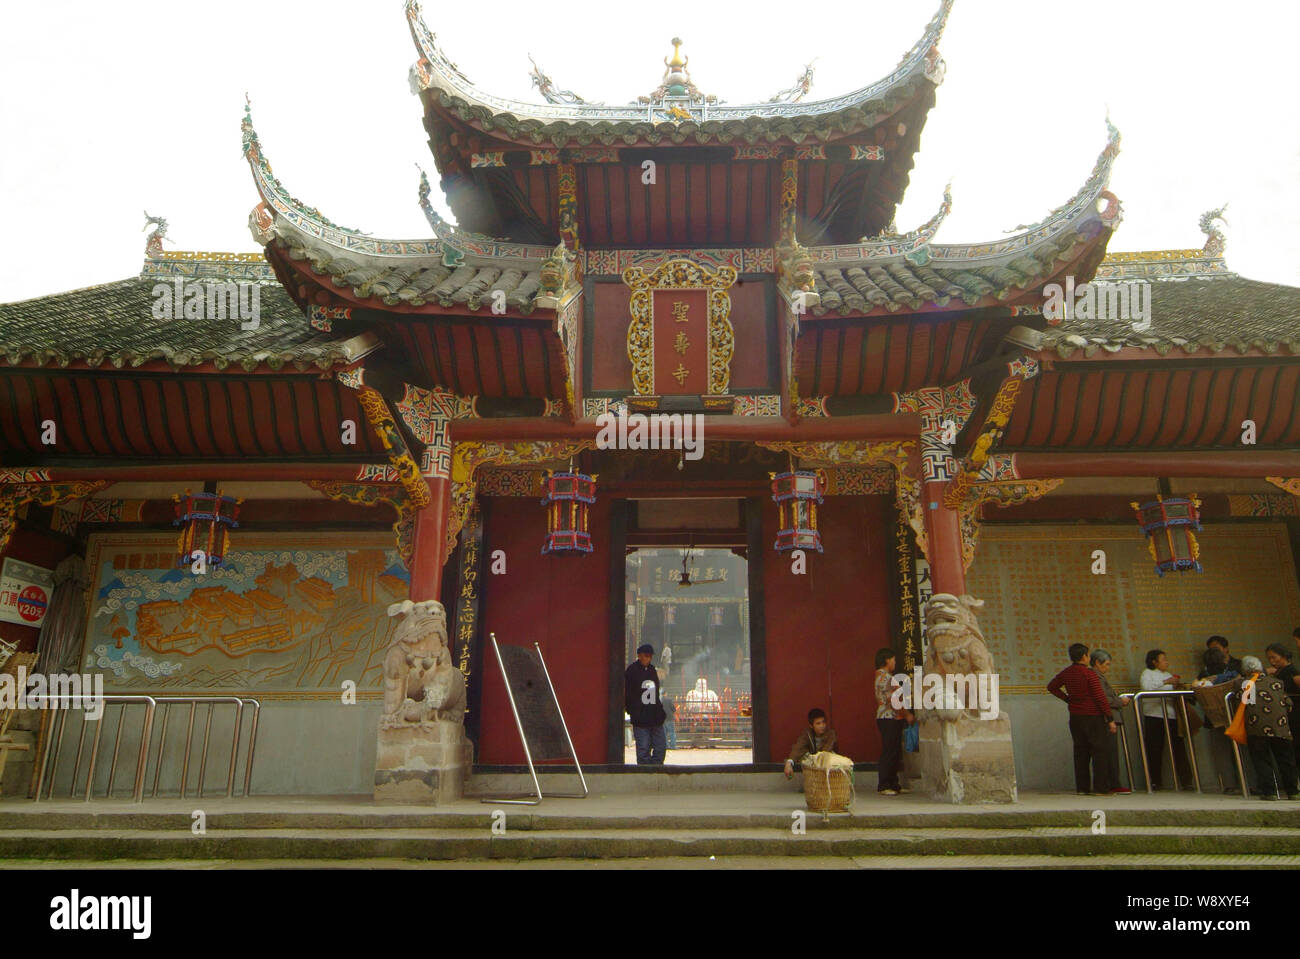 View of the Shengshou Temple in Dazu County, Chongqing, China, November 2006. Stock Photo